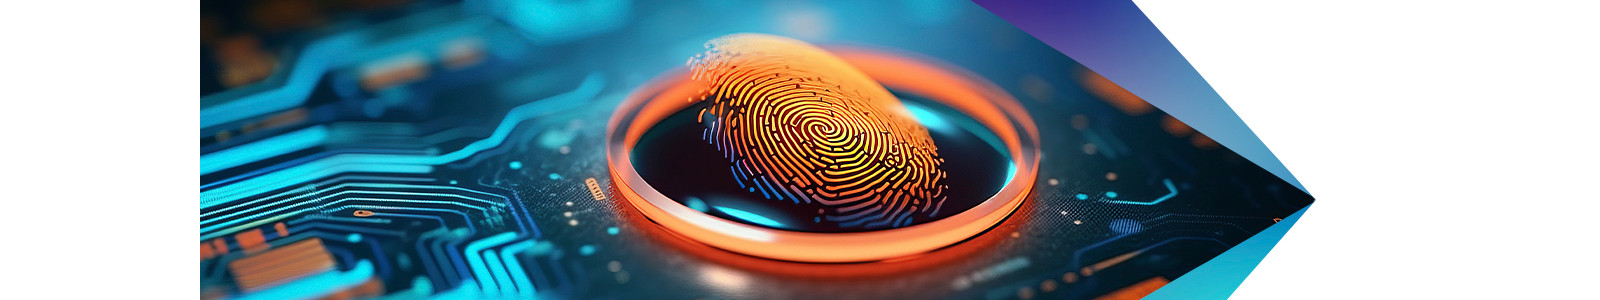 Graphic fingerprint data